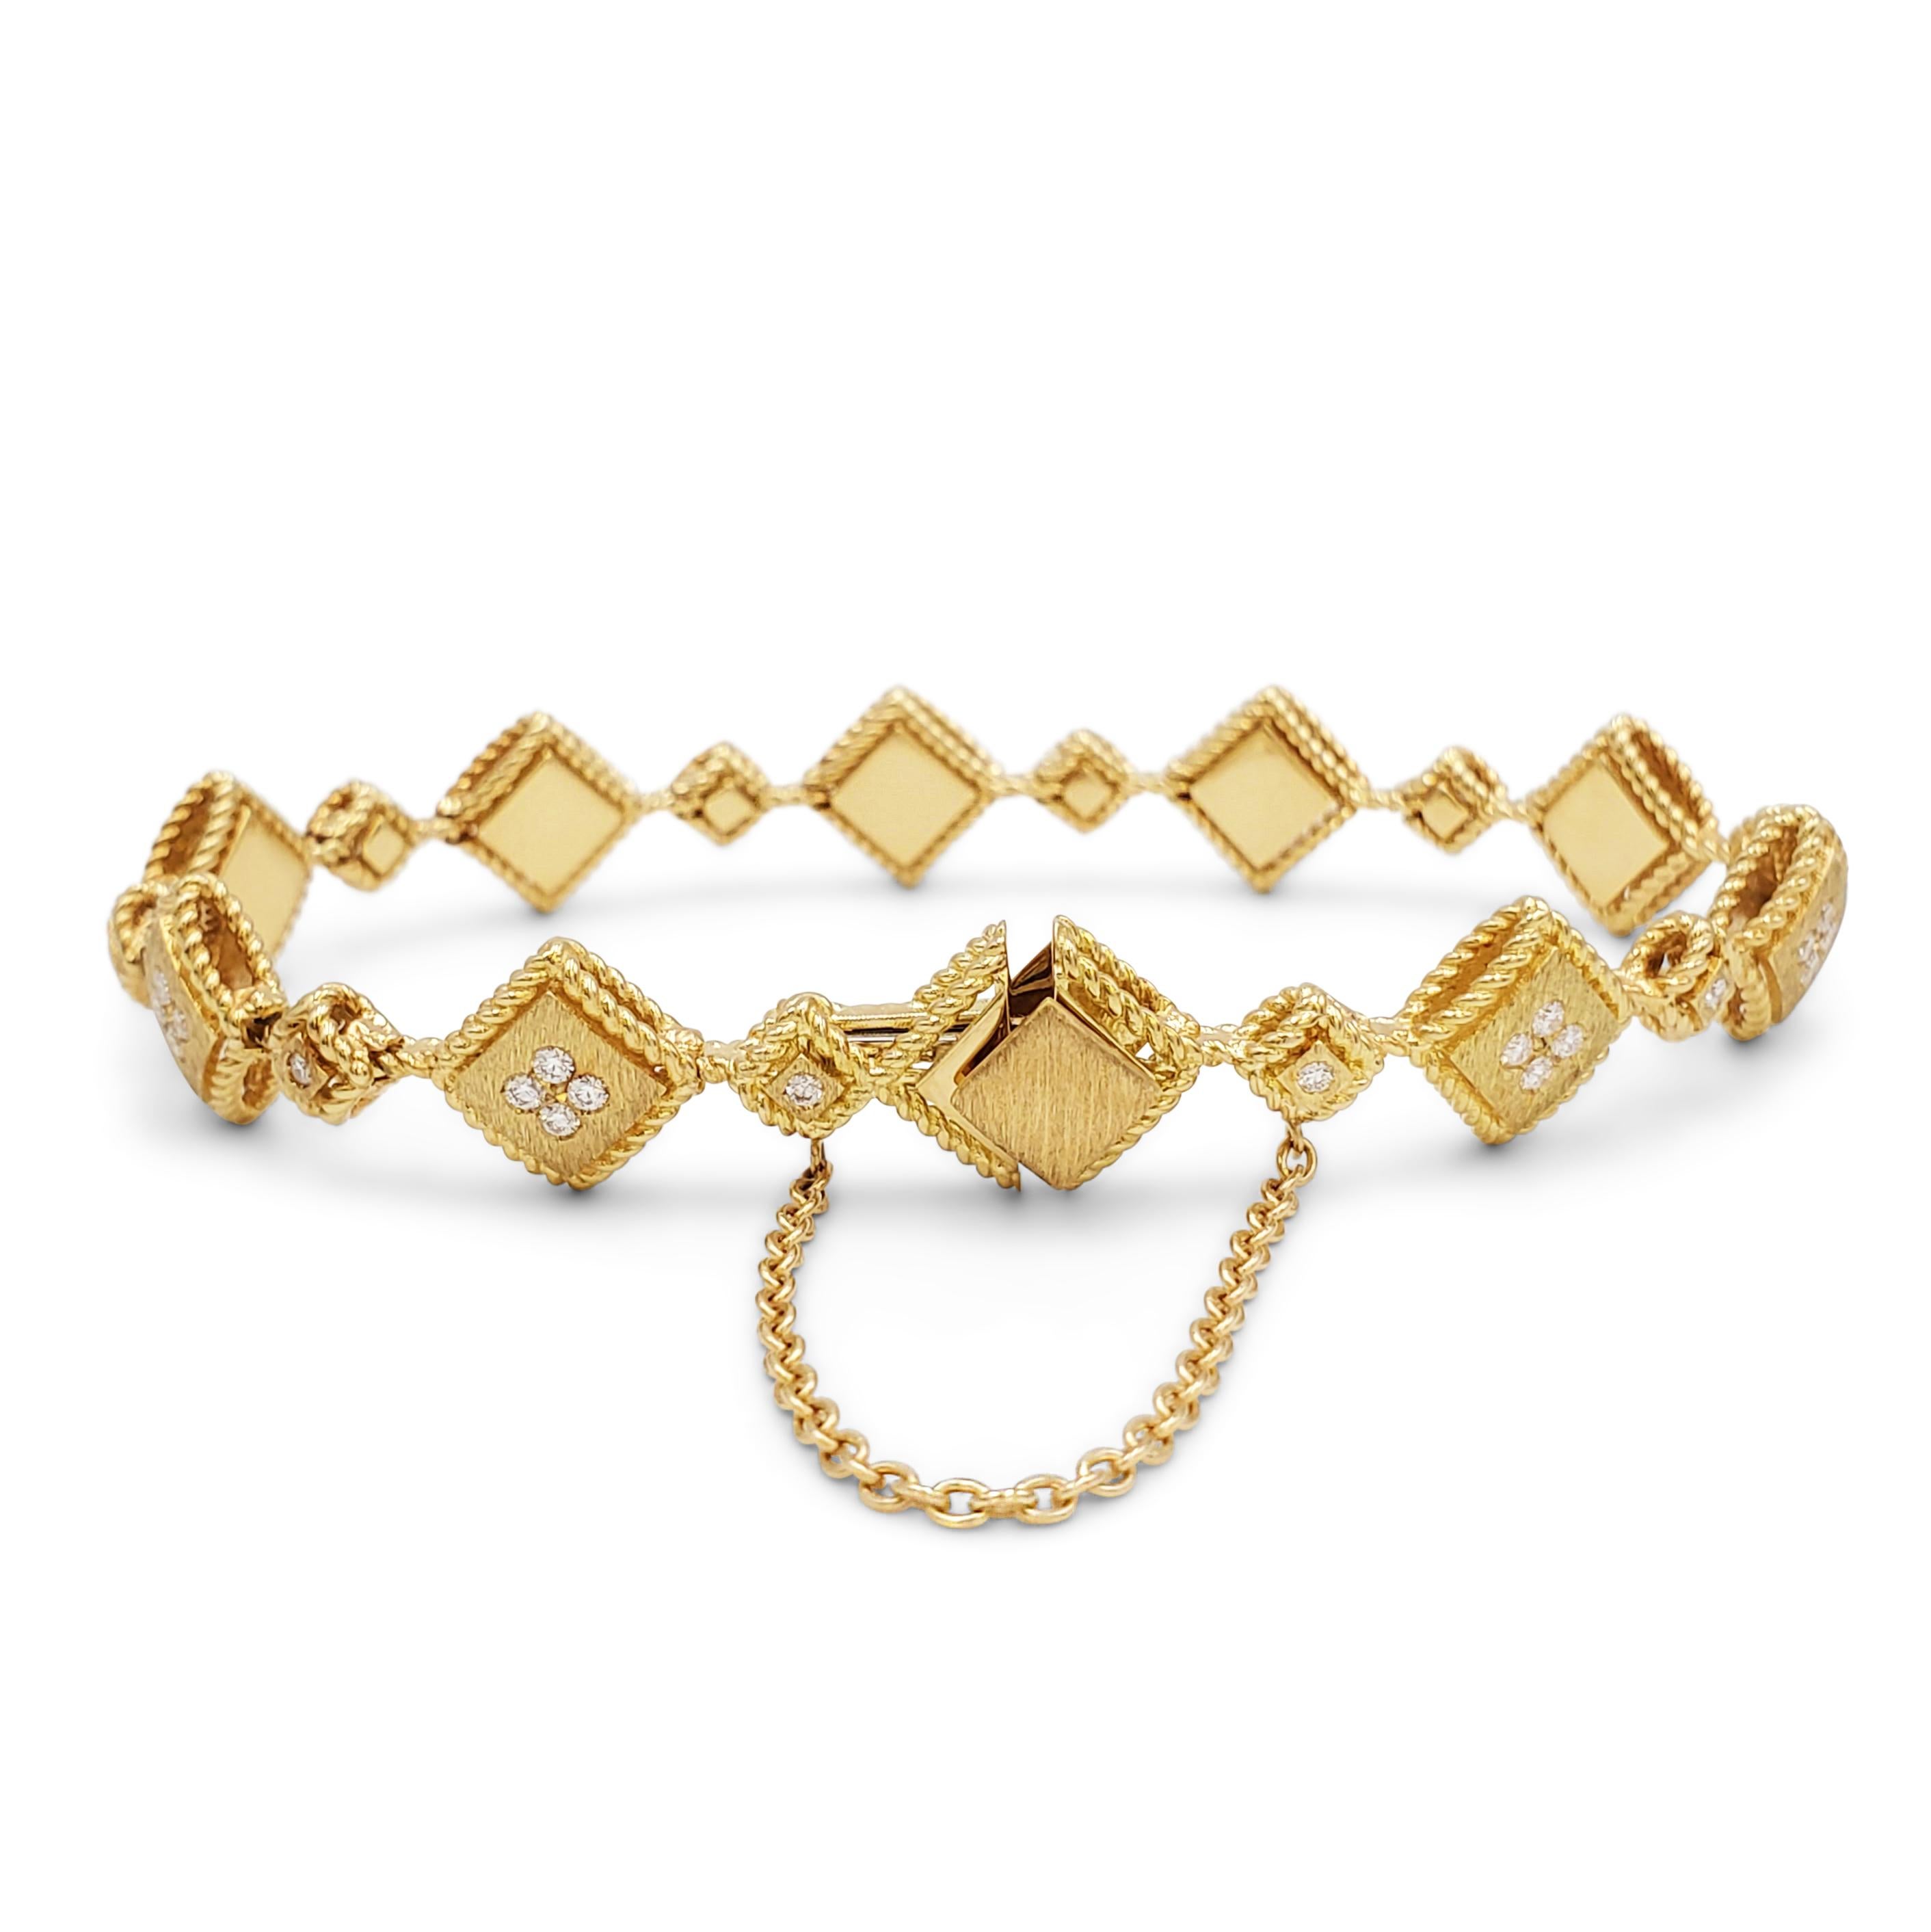 Contemporain Bracelet en or jaune et diamants Ducale de Roberto Coin